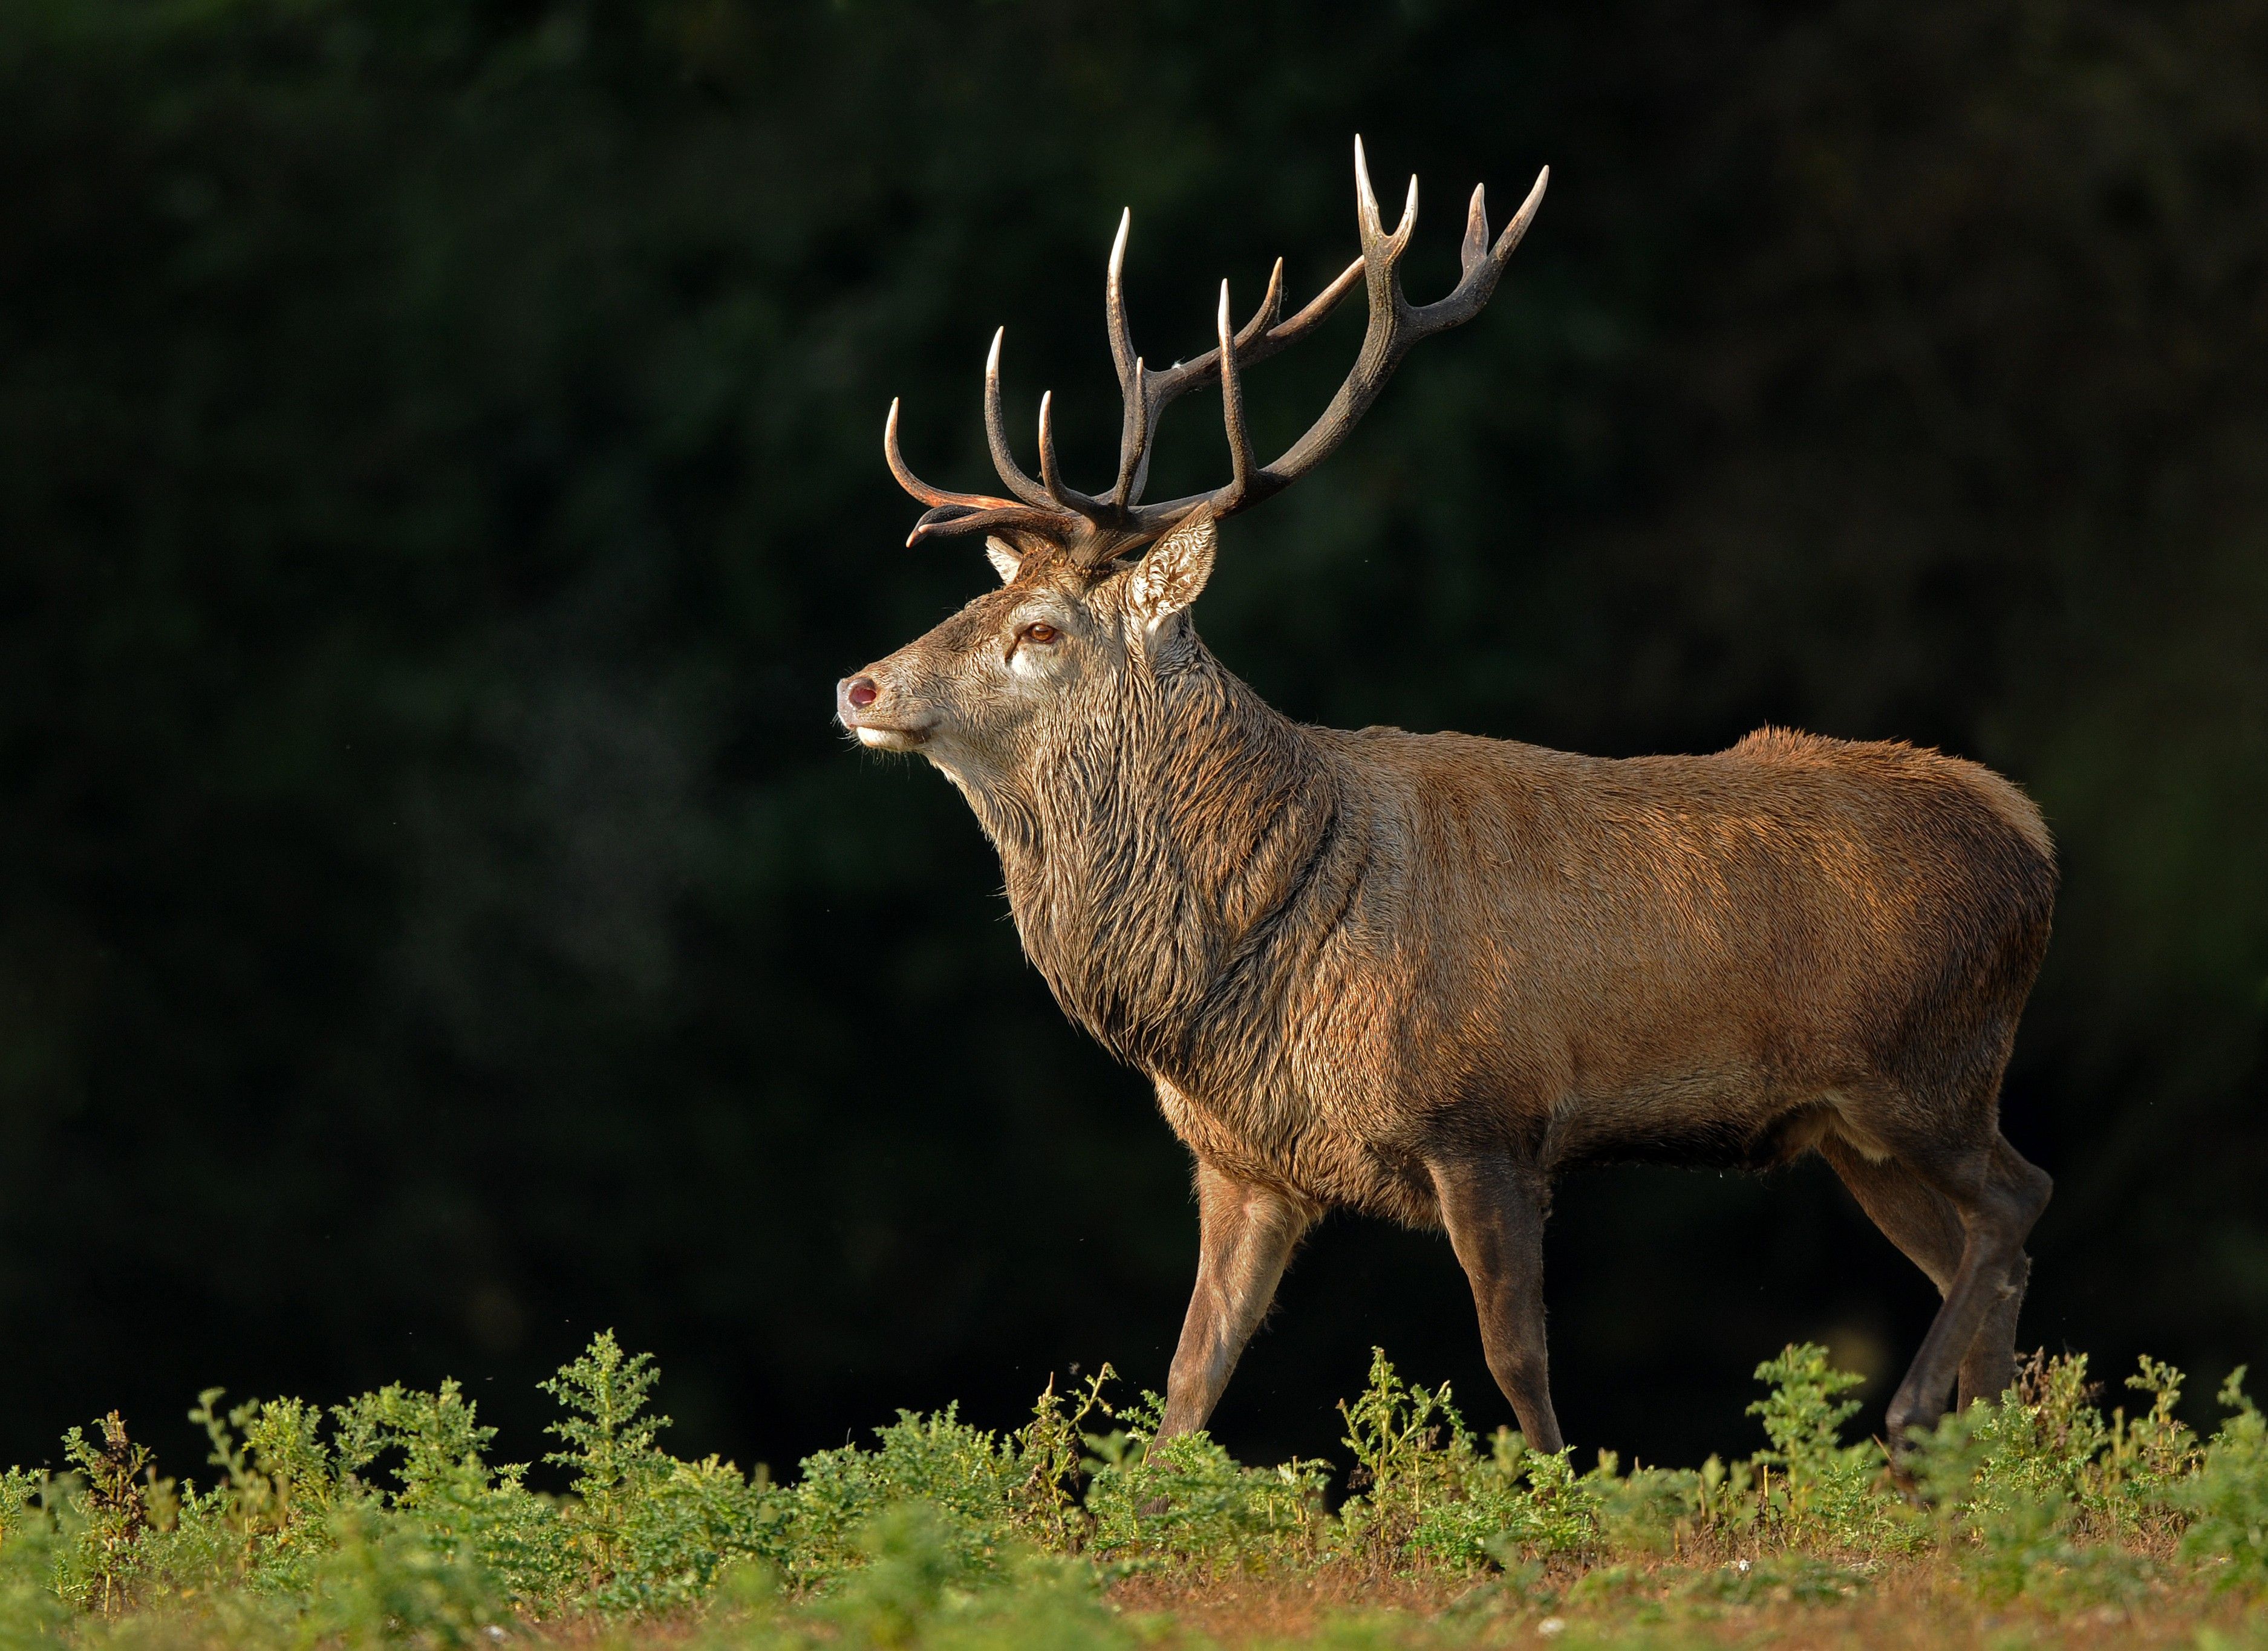 red deer stag by Jon Evans by Jon Evans HD Wallpaper